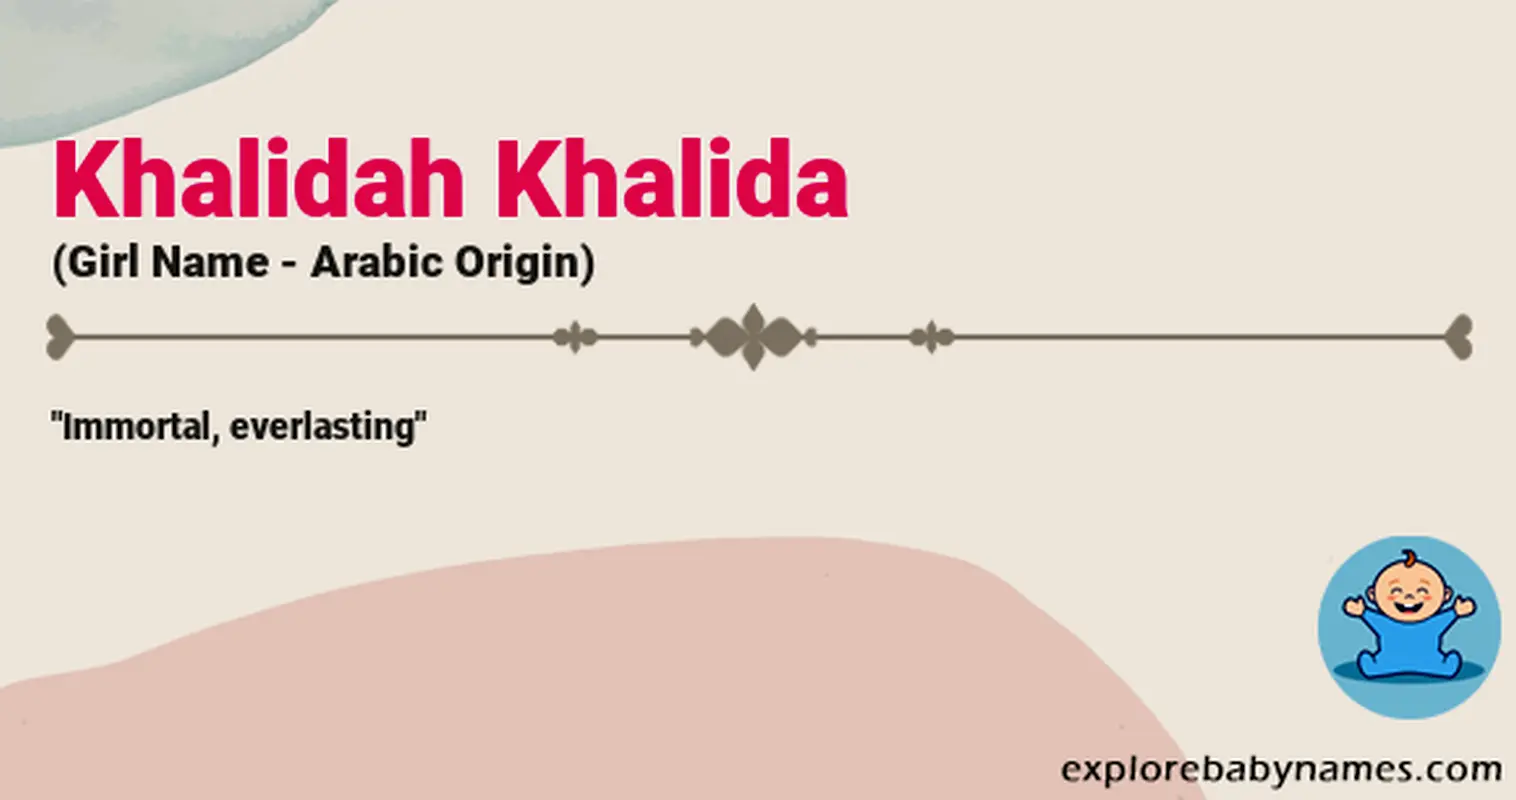 Meaning of Khalidah Khalida